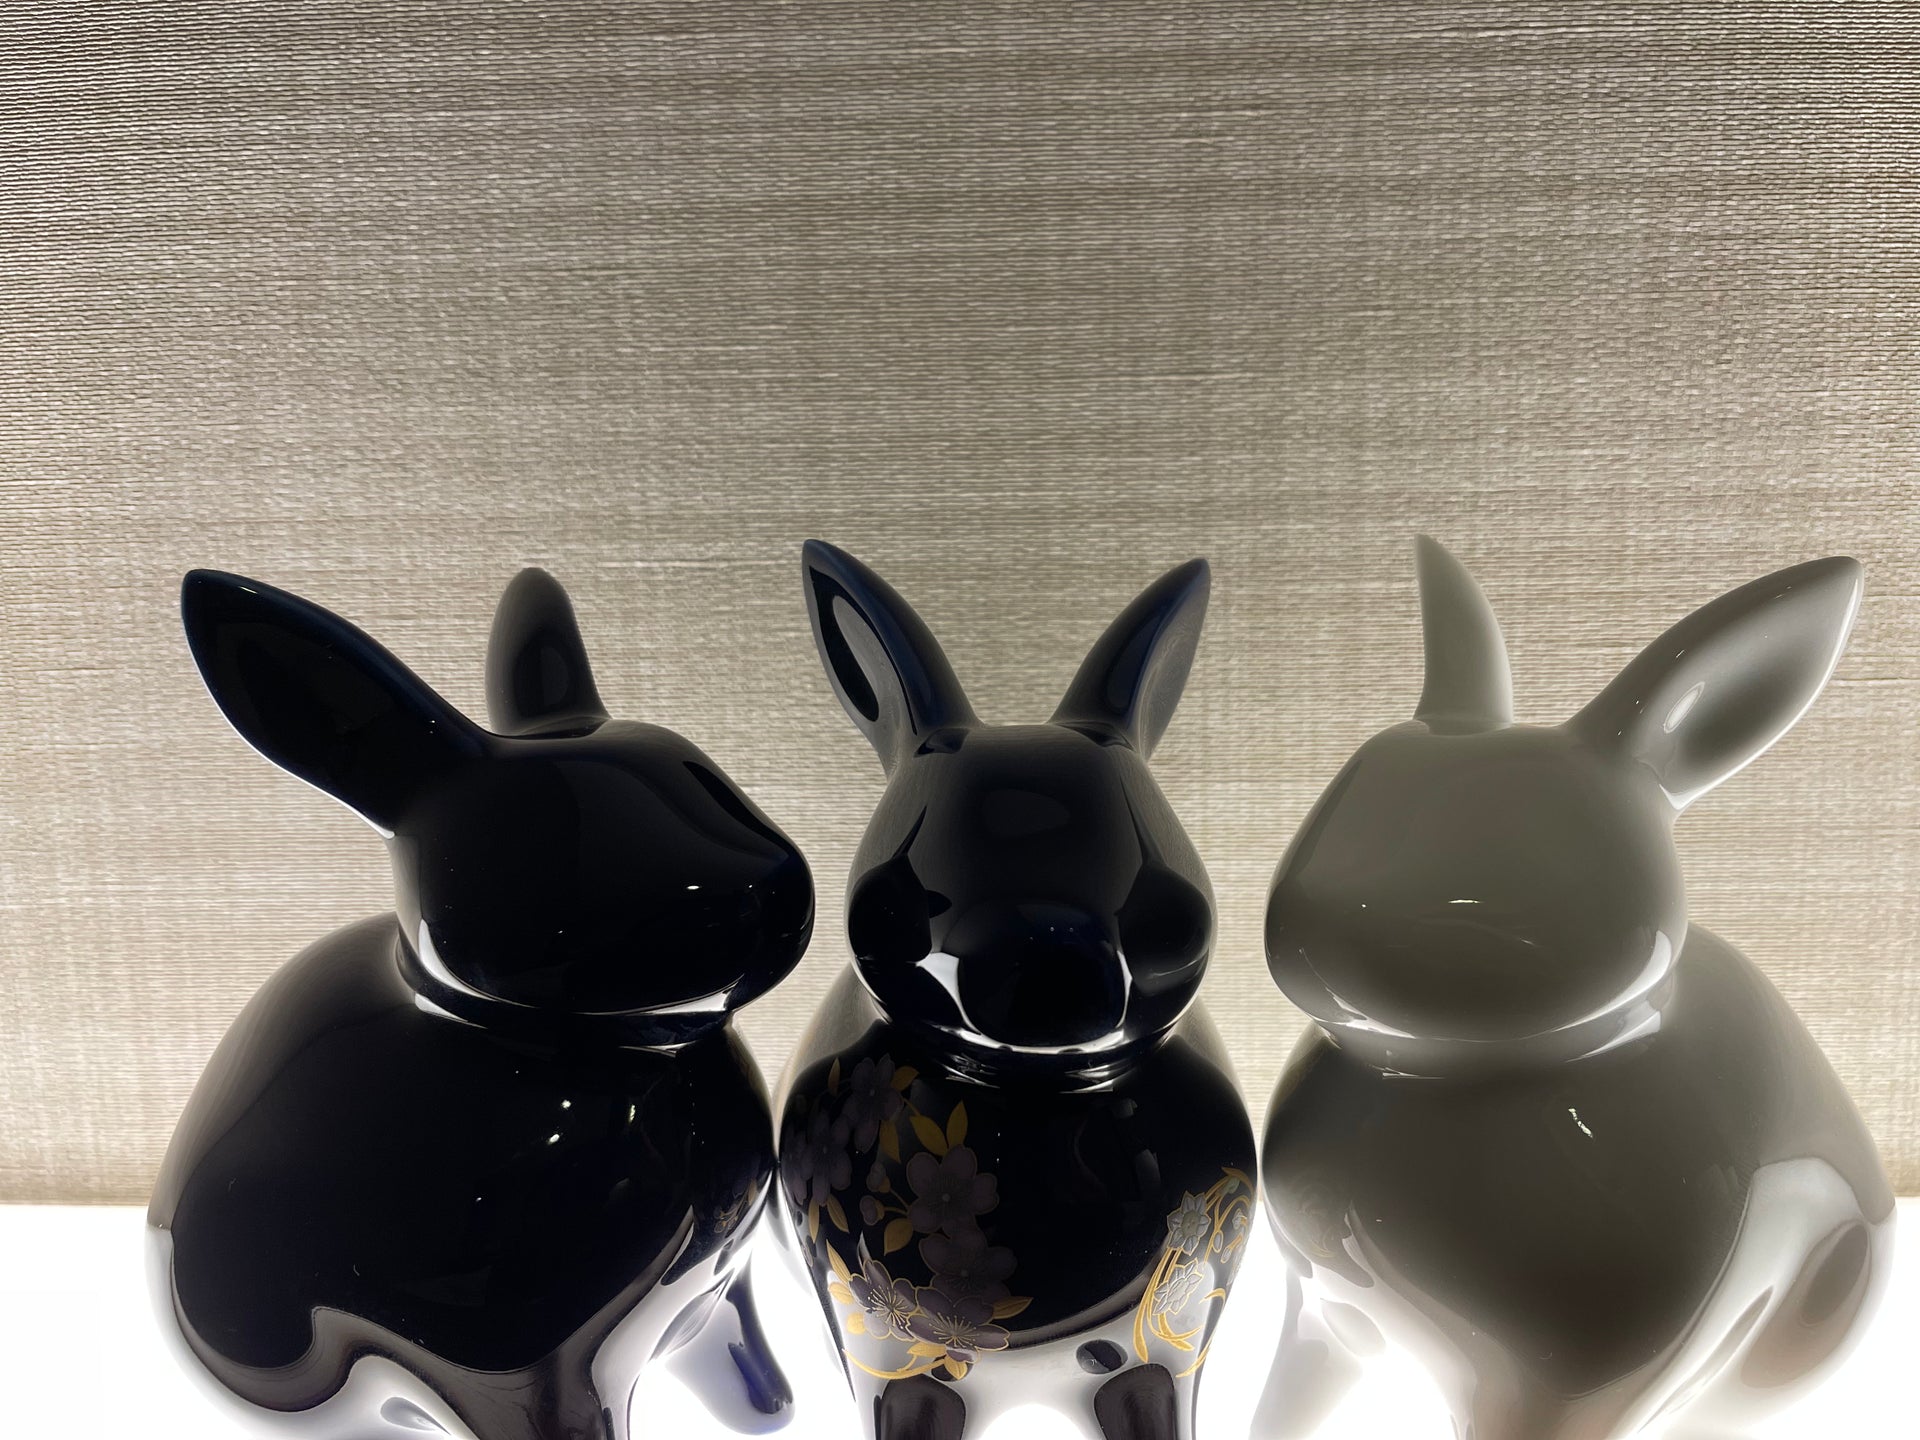 Load video: How Arita Ware Rabbit Ornament Is Made〜有田焼のウサギの置き物ができるまで〜